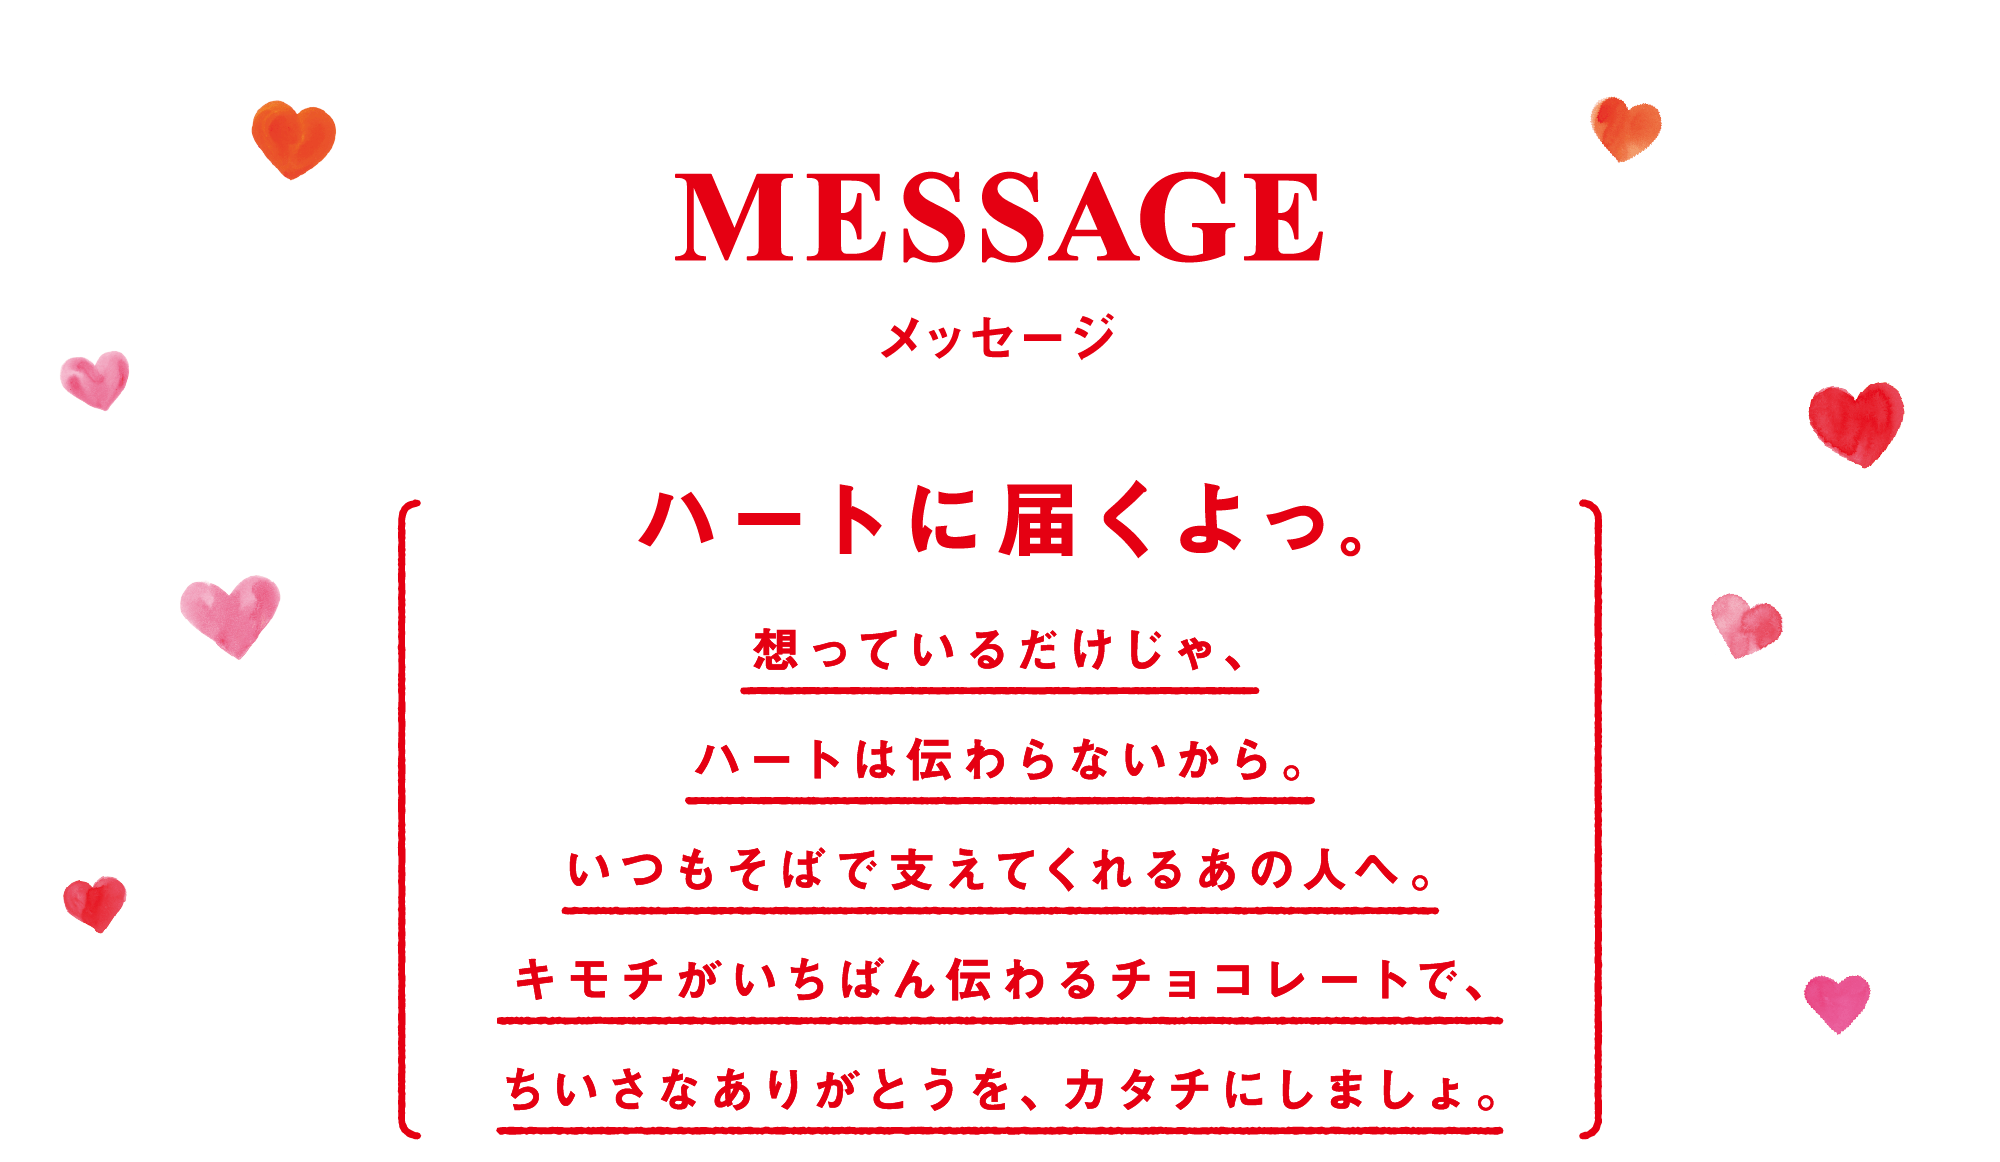 MESSAGE メッセージ ハートに届くよっ。 想っているだけじゃ、ハートは伝わらないから。いつもそばで支えてくれるあの人へ。キモチがいちばん伝わるチョコレートで、ちいさなありがとうを、カタチにしましょ。